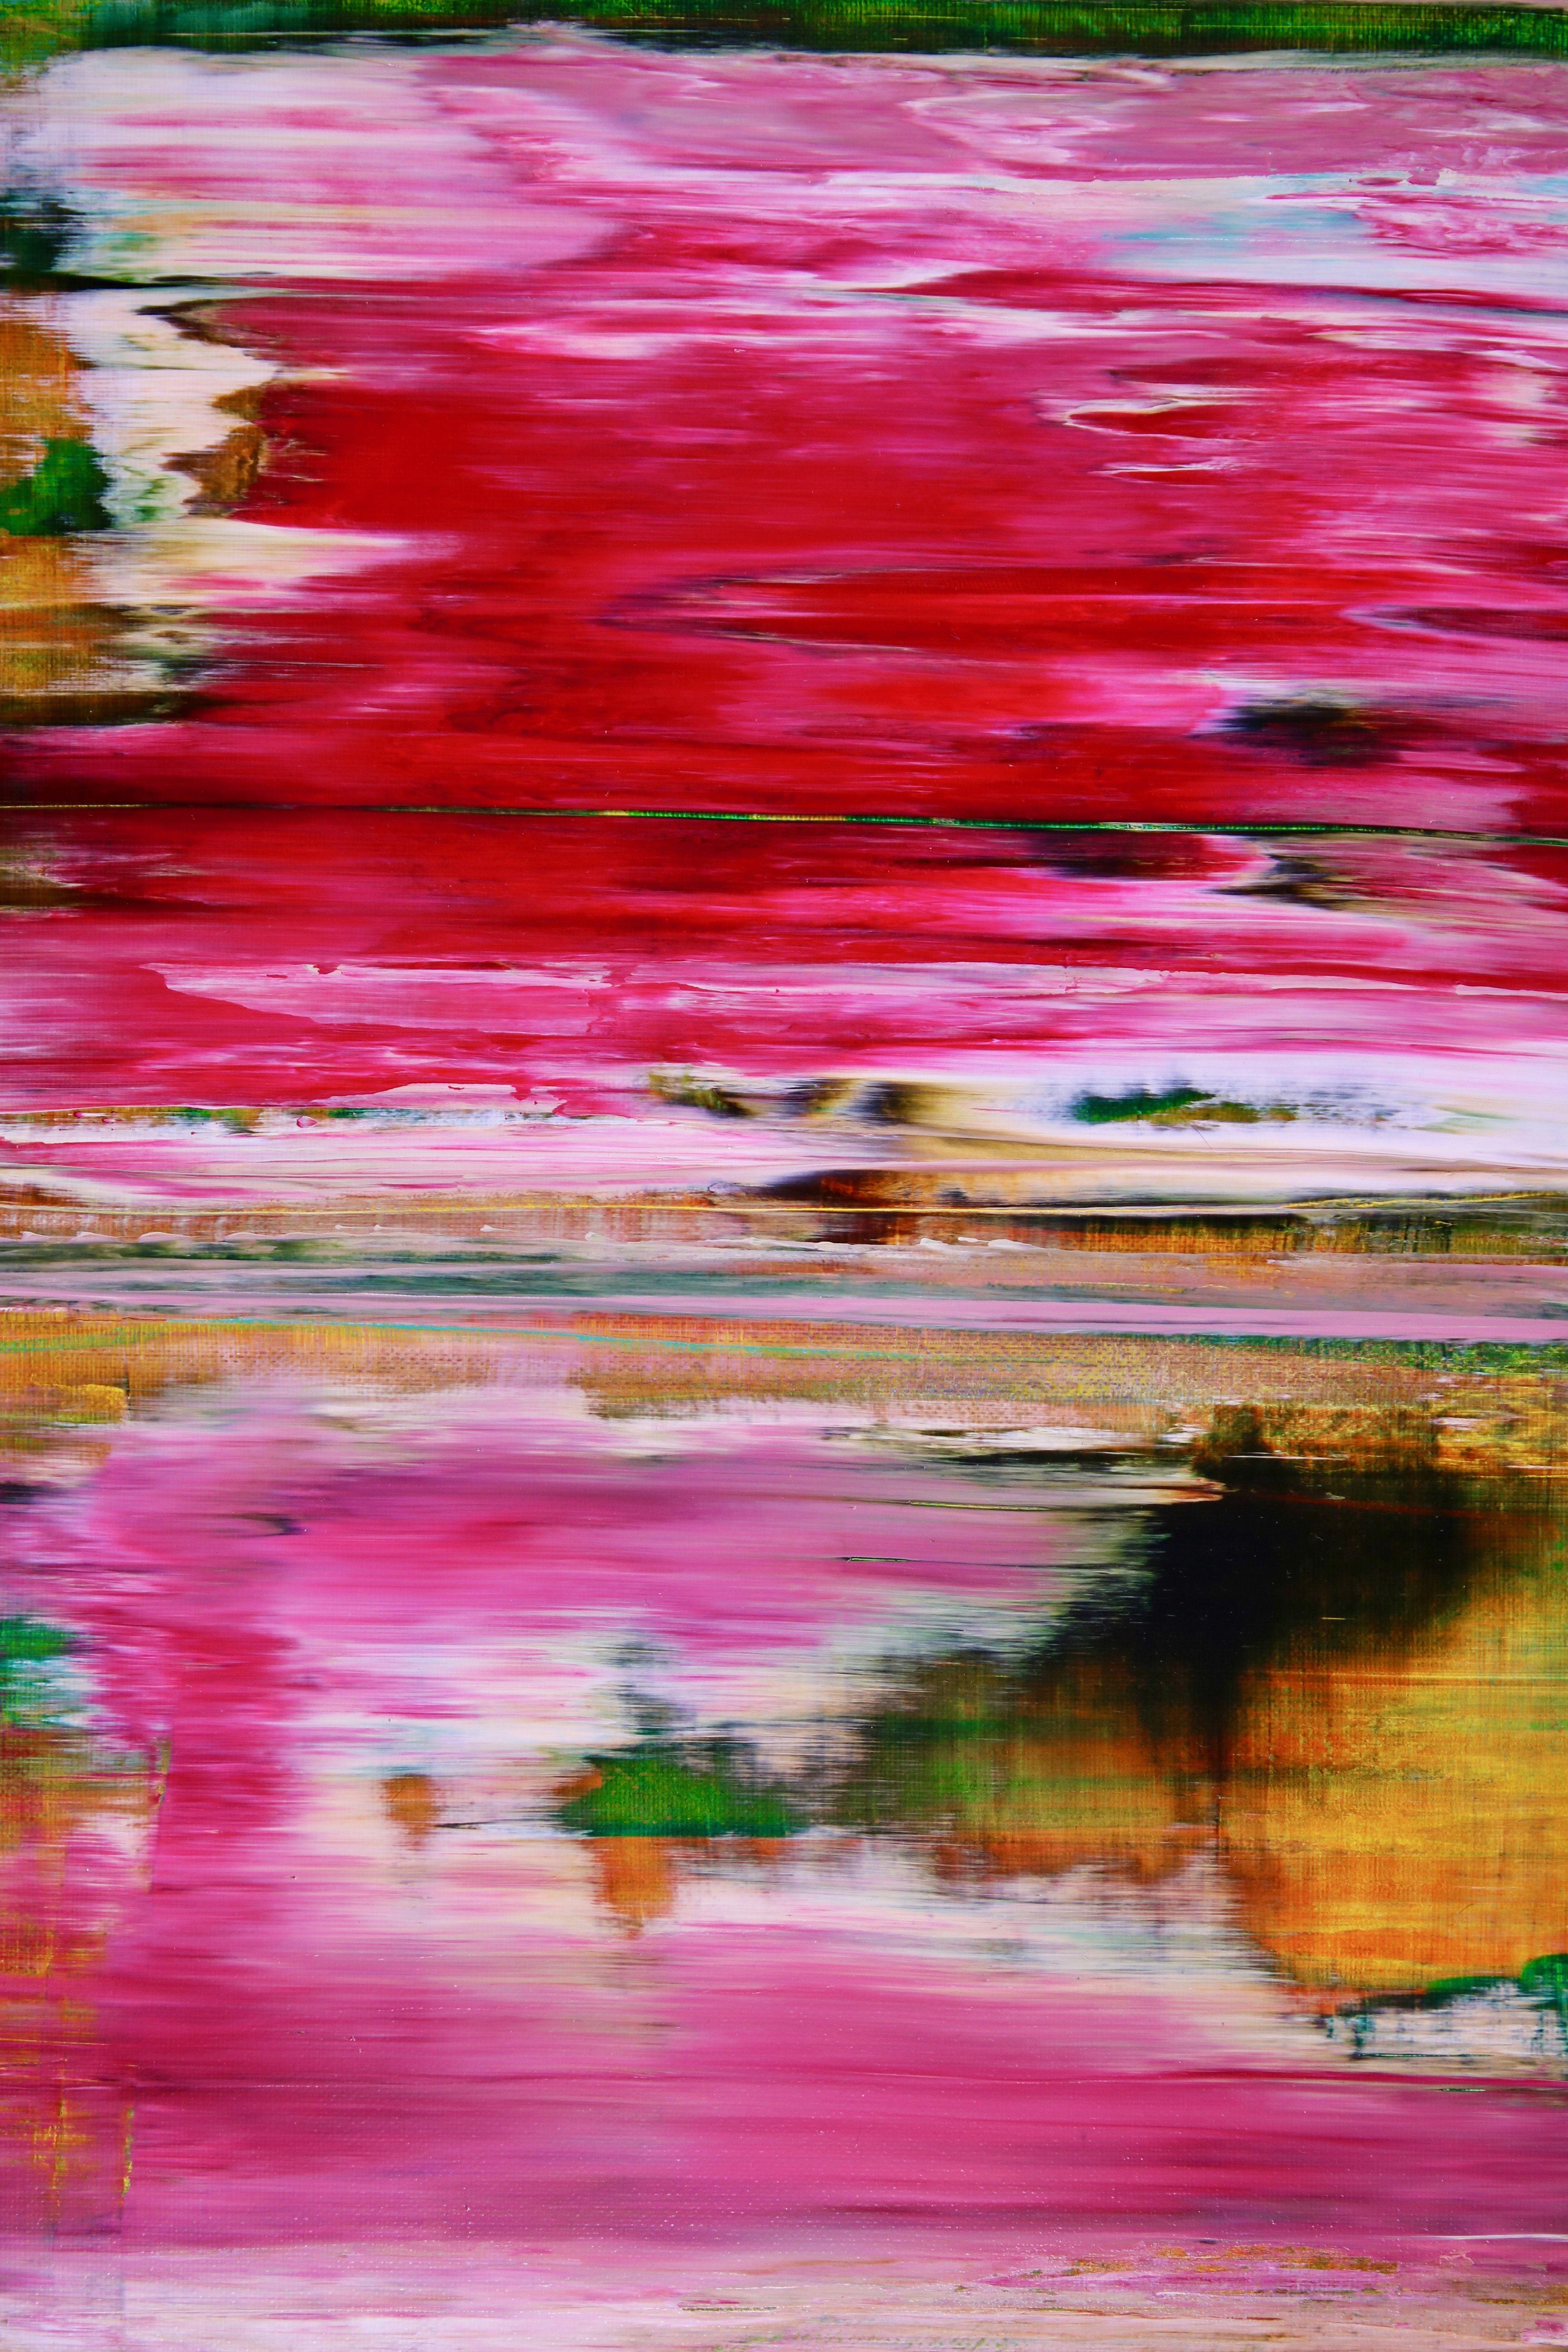 Falaises californiennes rougeoyantes, peinture, acrylique sur toile - Painting de Nestor Toro